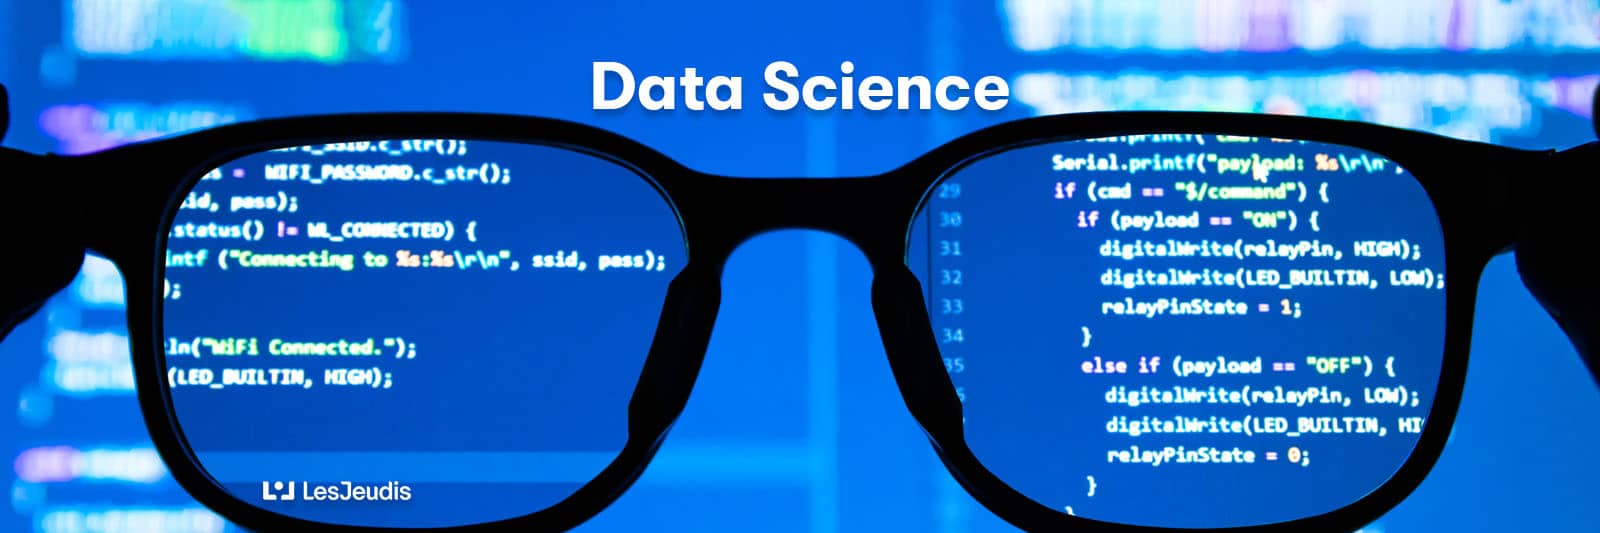 des lunettes avec de code de programmation pour la data science